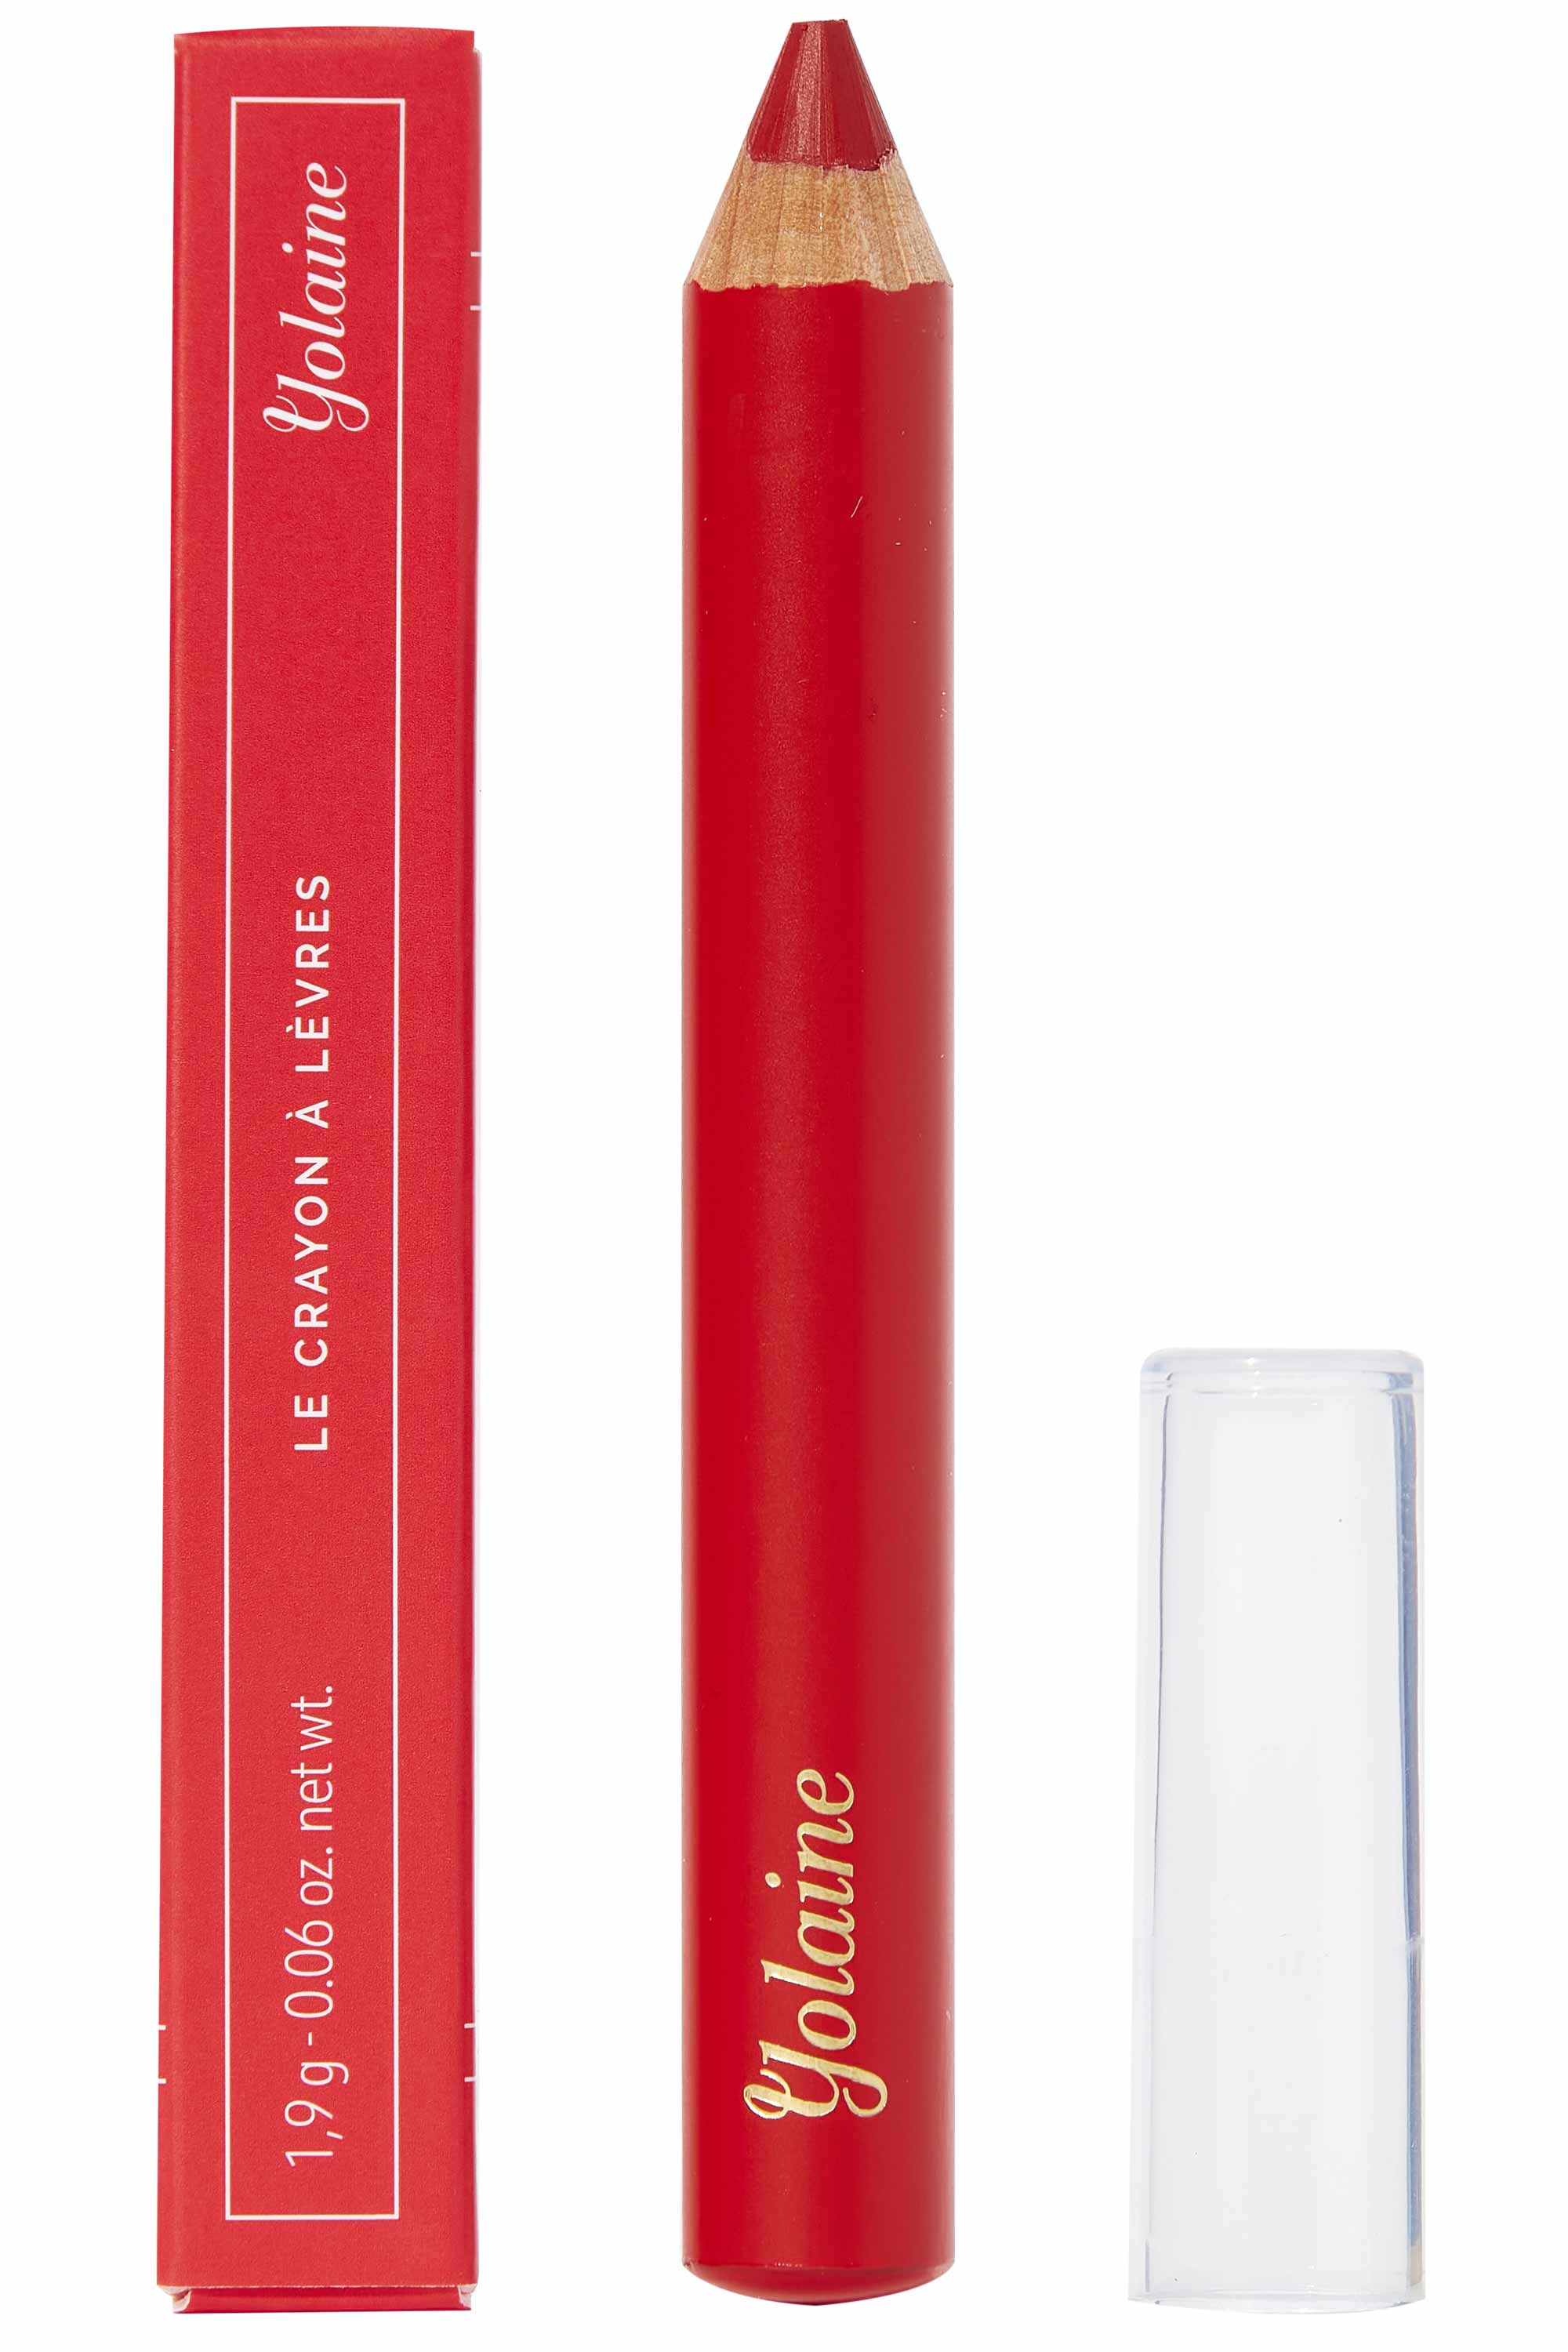 Yolaine - Les crayons à lèvres – Les Rouges - Blissim